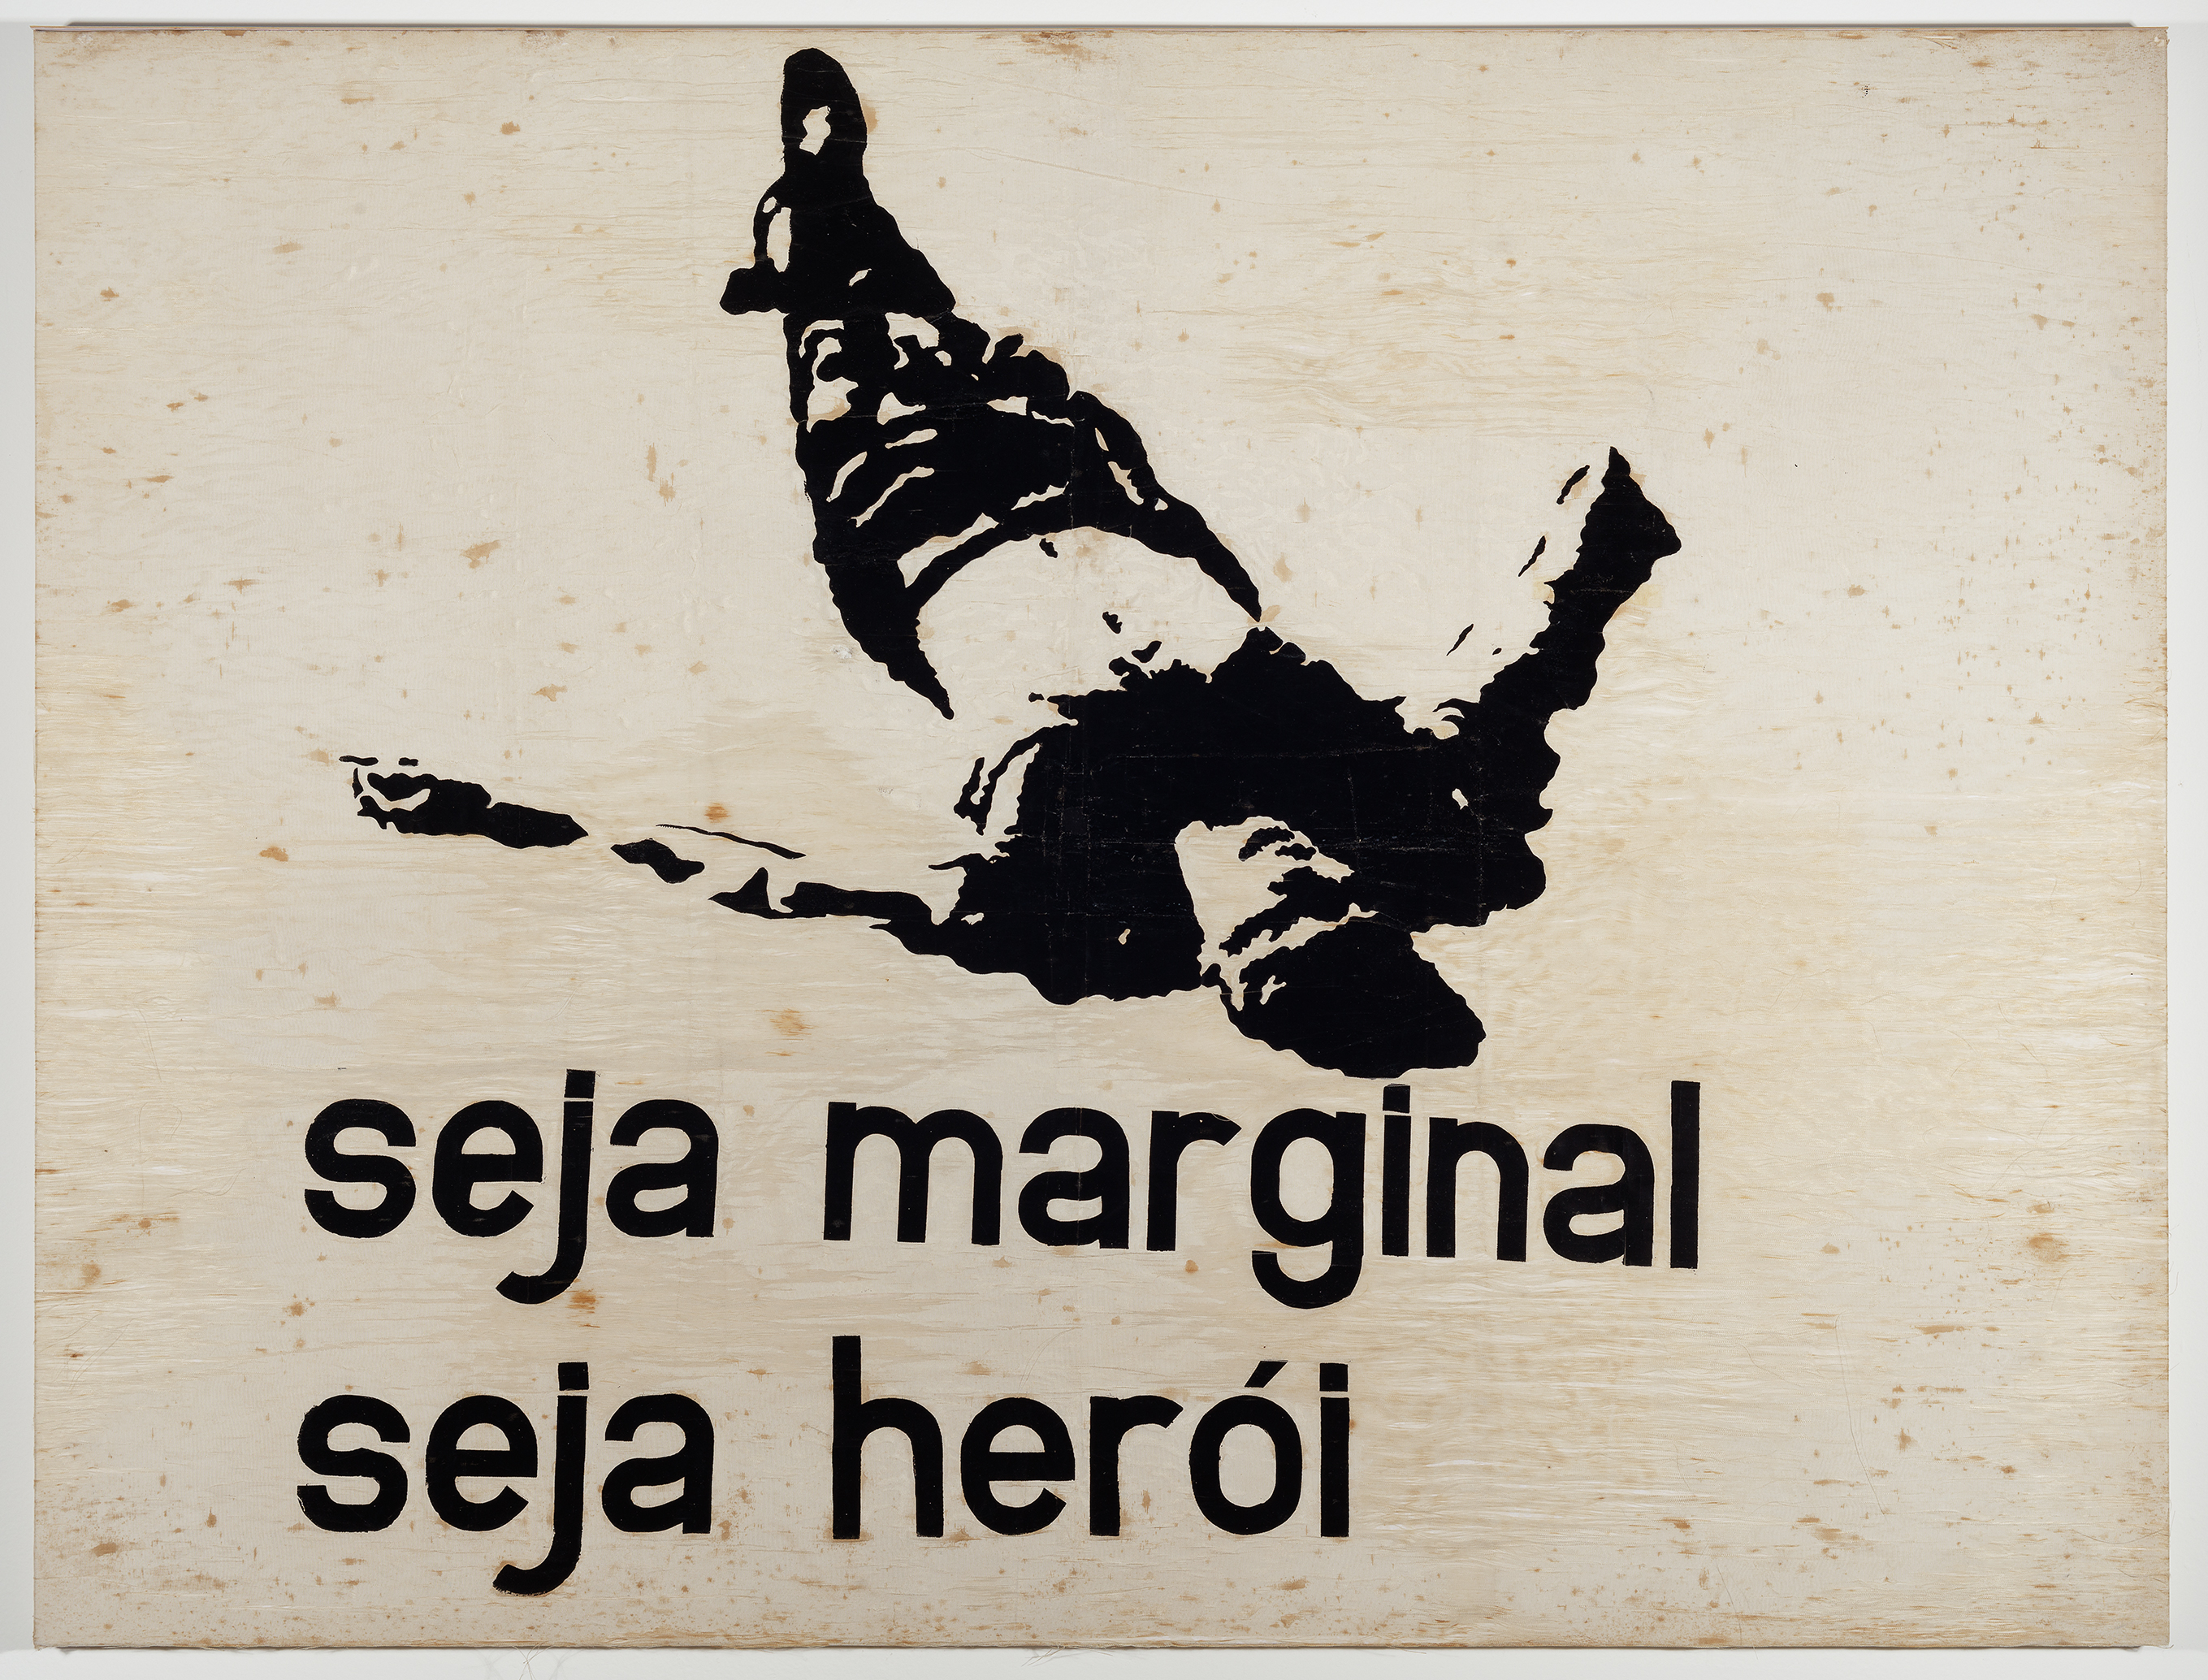 Hélio Oiticica, Seja marginal, seja herói, 1968, Coleção Eugenio Pacelli Pires dos Santos, Rio de Janeiro